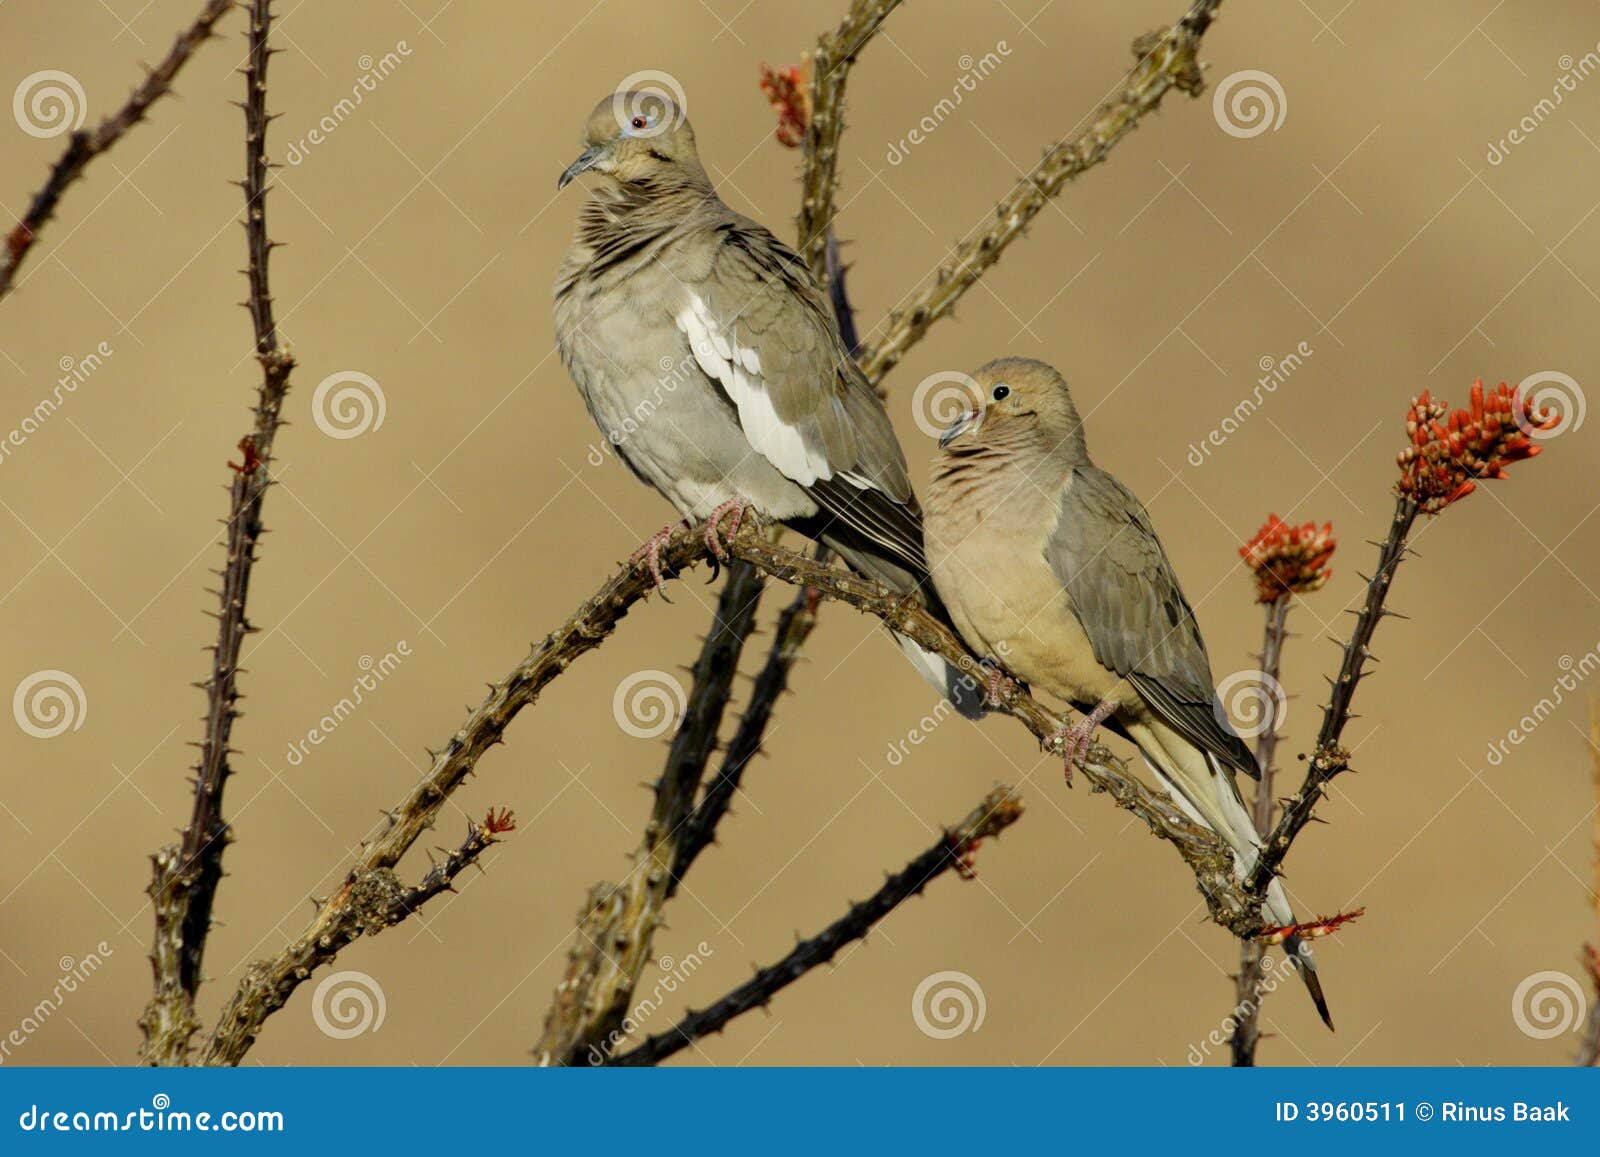 doves on ocotillo branch